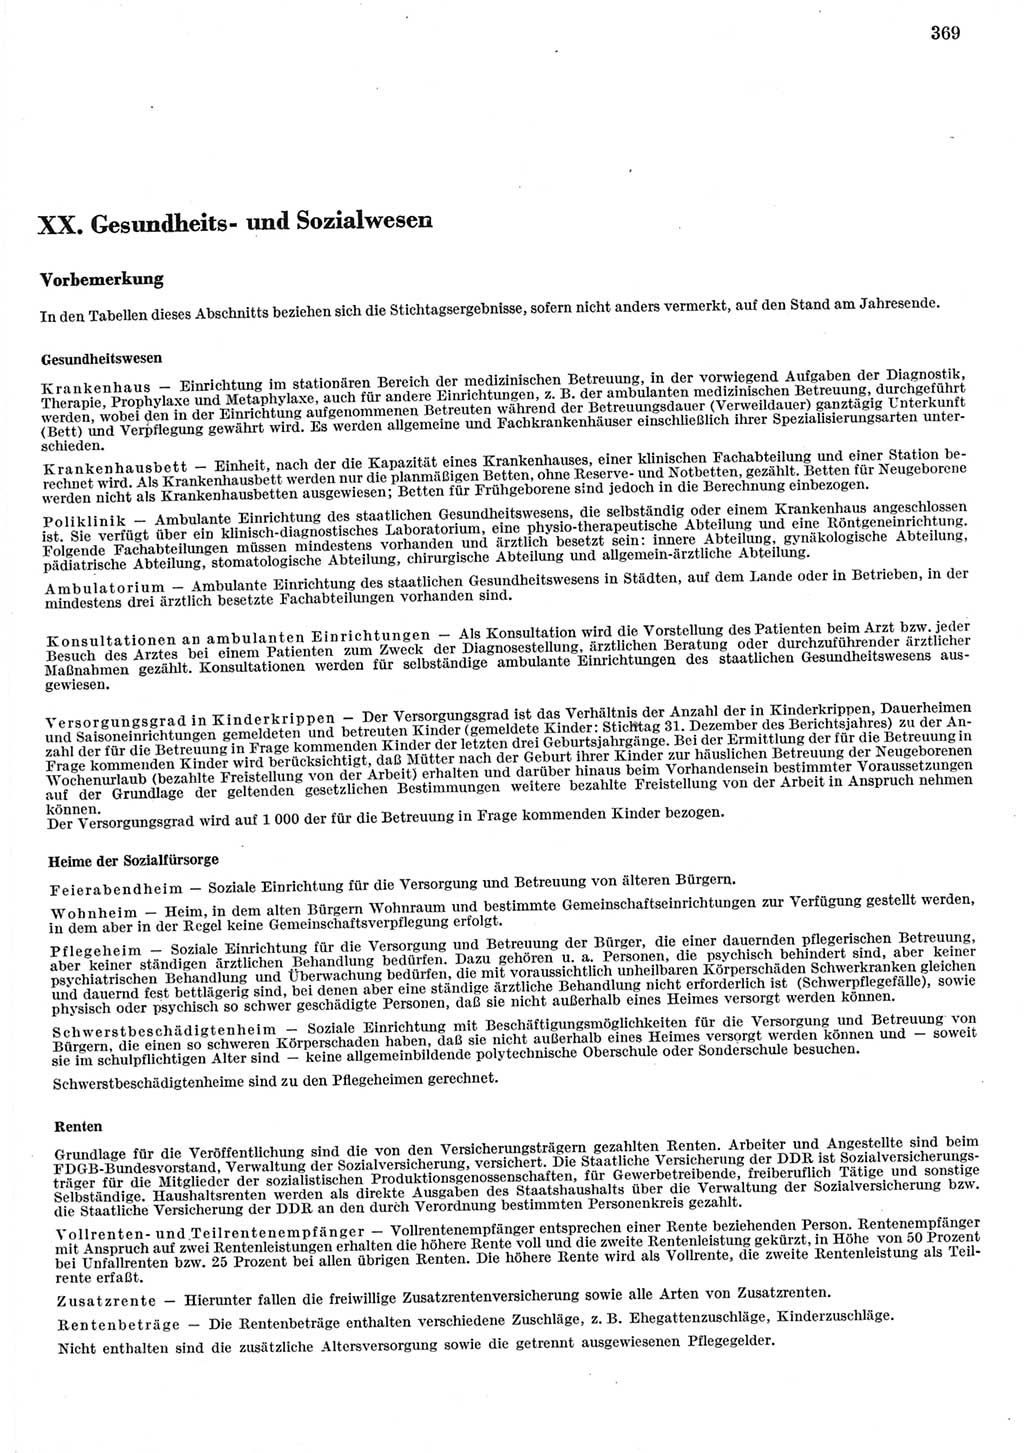 Statistisches Jahrbuch der Deutschen Demokratischen Republik (DDR) 1977, Seite 369 (Stat. Jb. DDR 1977, S. 369)